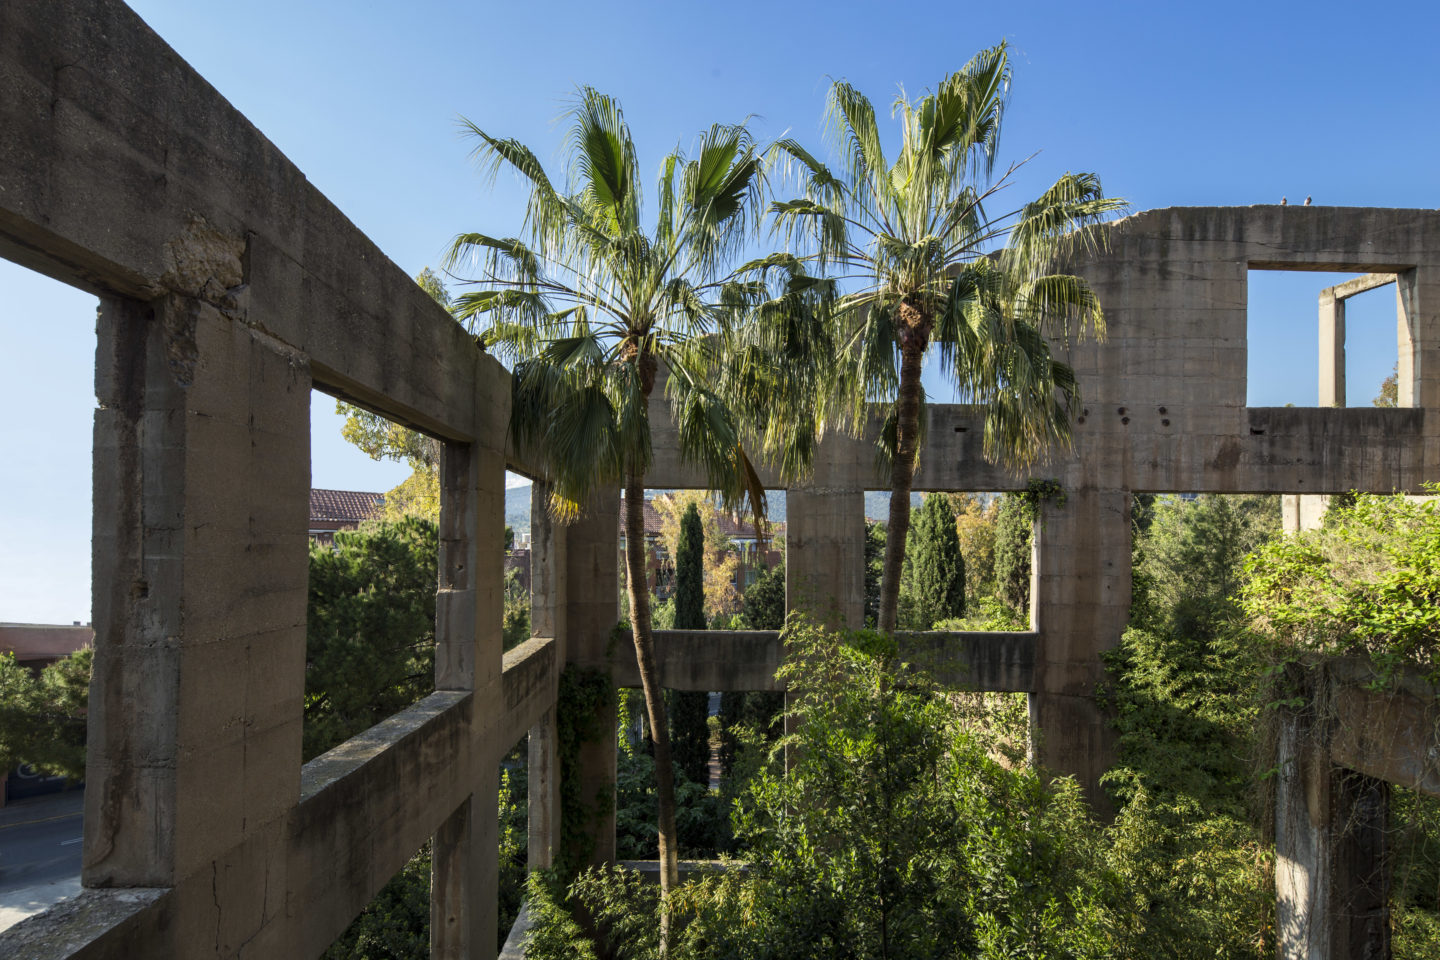 Ricardo_Bofill_Taller_de_Arquitectura_Barcelona_Spain_The_Gardens_21-1440x960